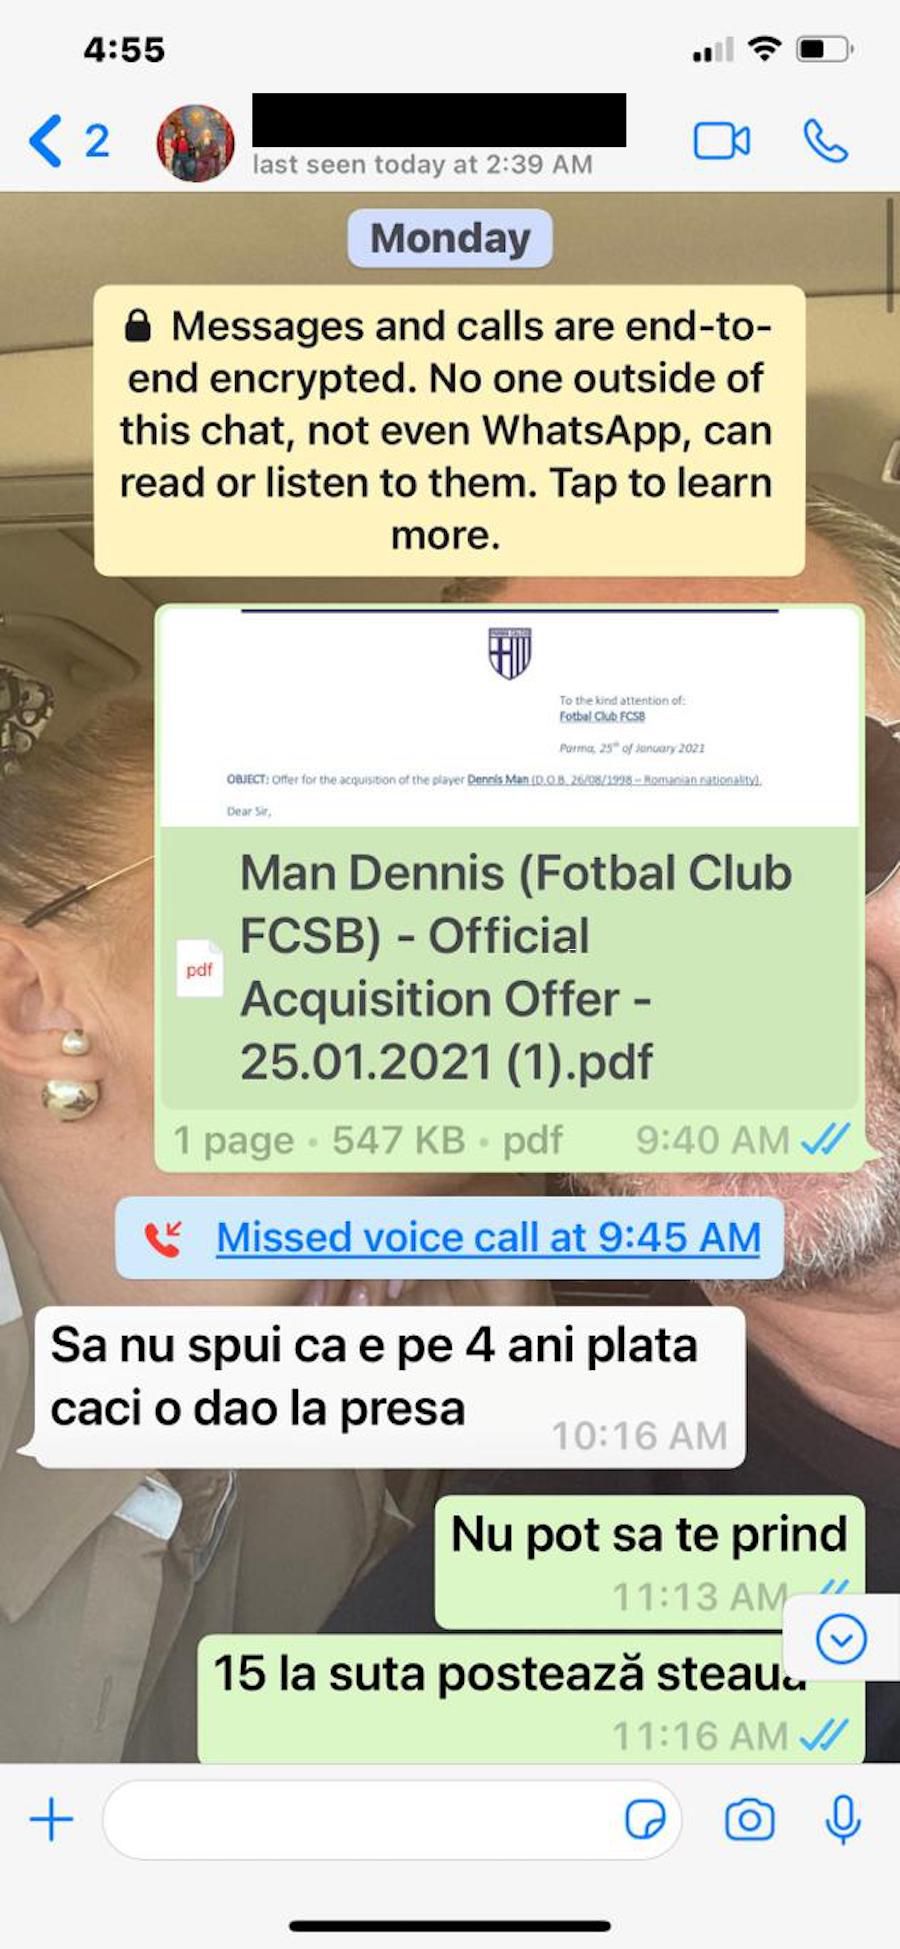 Analiza cazului Man: cu cine a negociat Anamaria Prodan, ce ofertă a adus și ce mesaje schimba cu Gigi Becali, Man și oficialii de la Parma + cât valorează o semnătură a lui Man din 2016